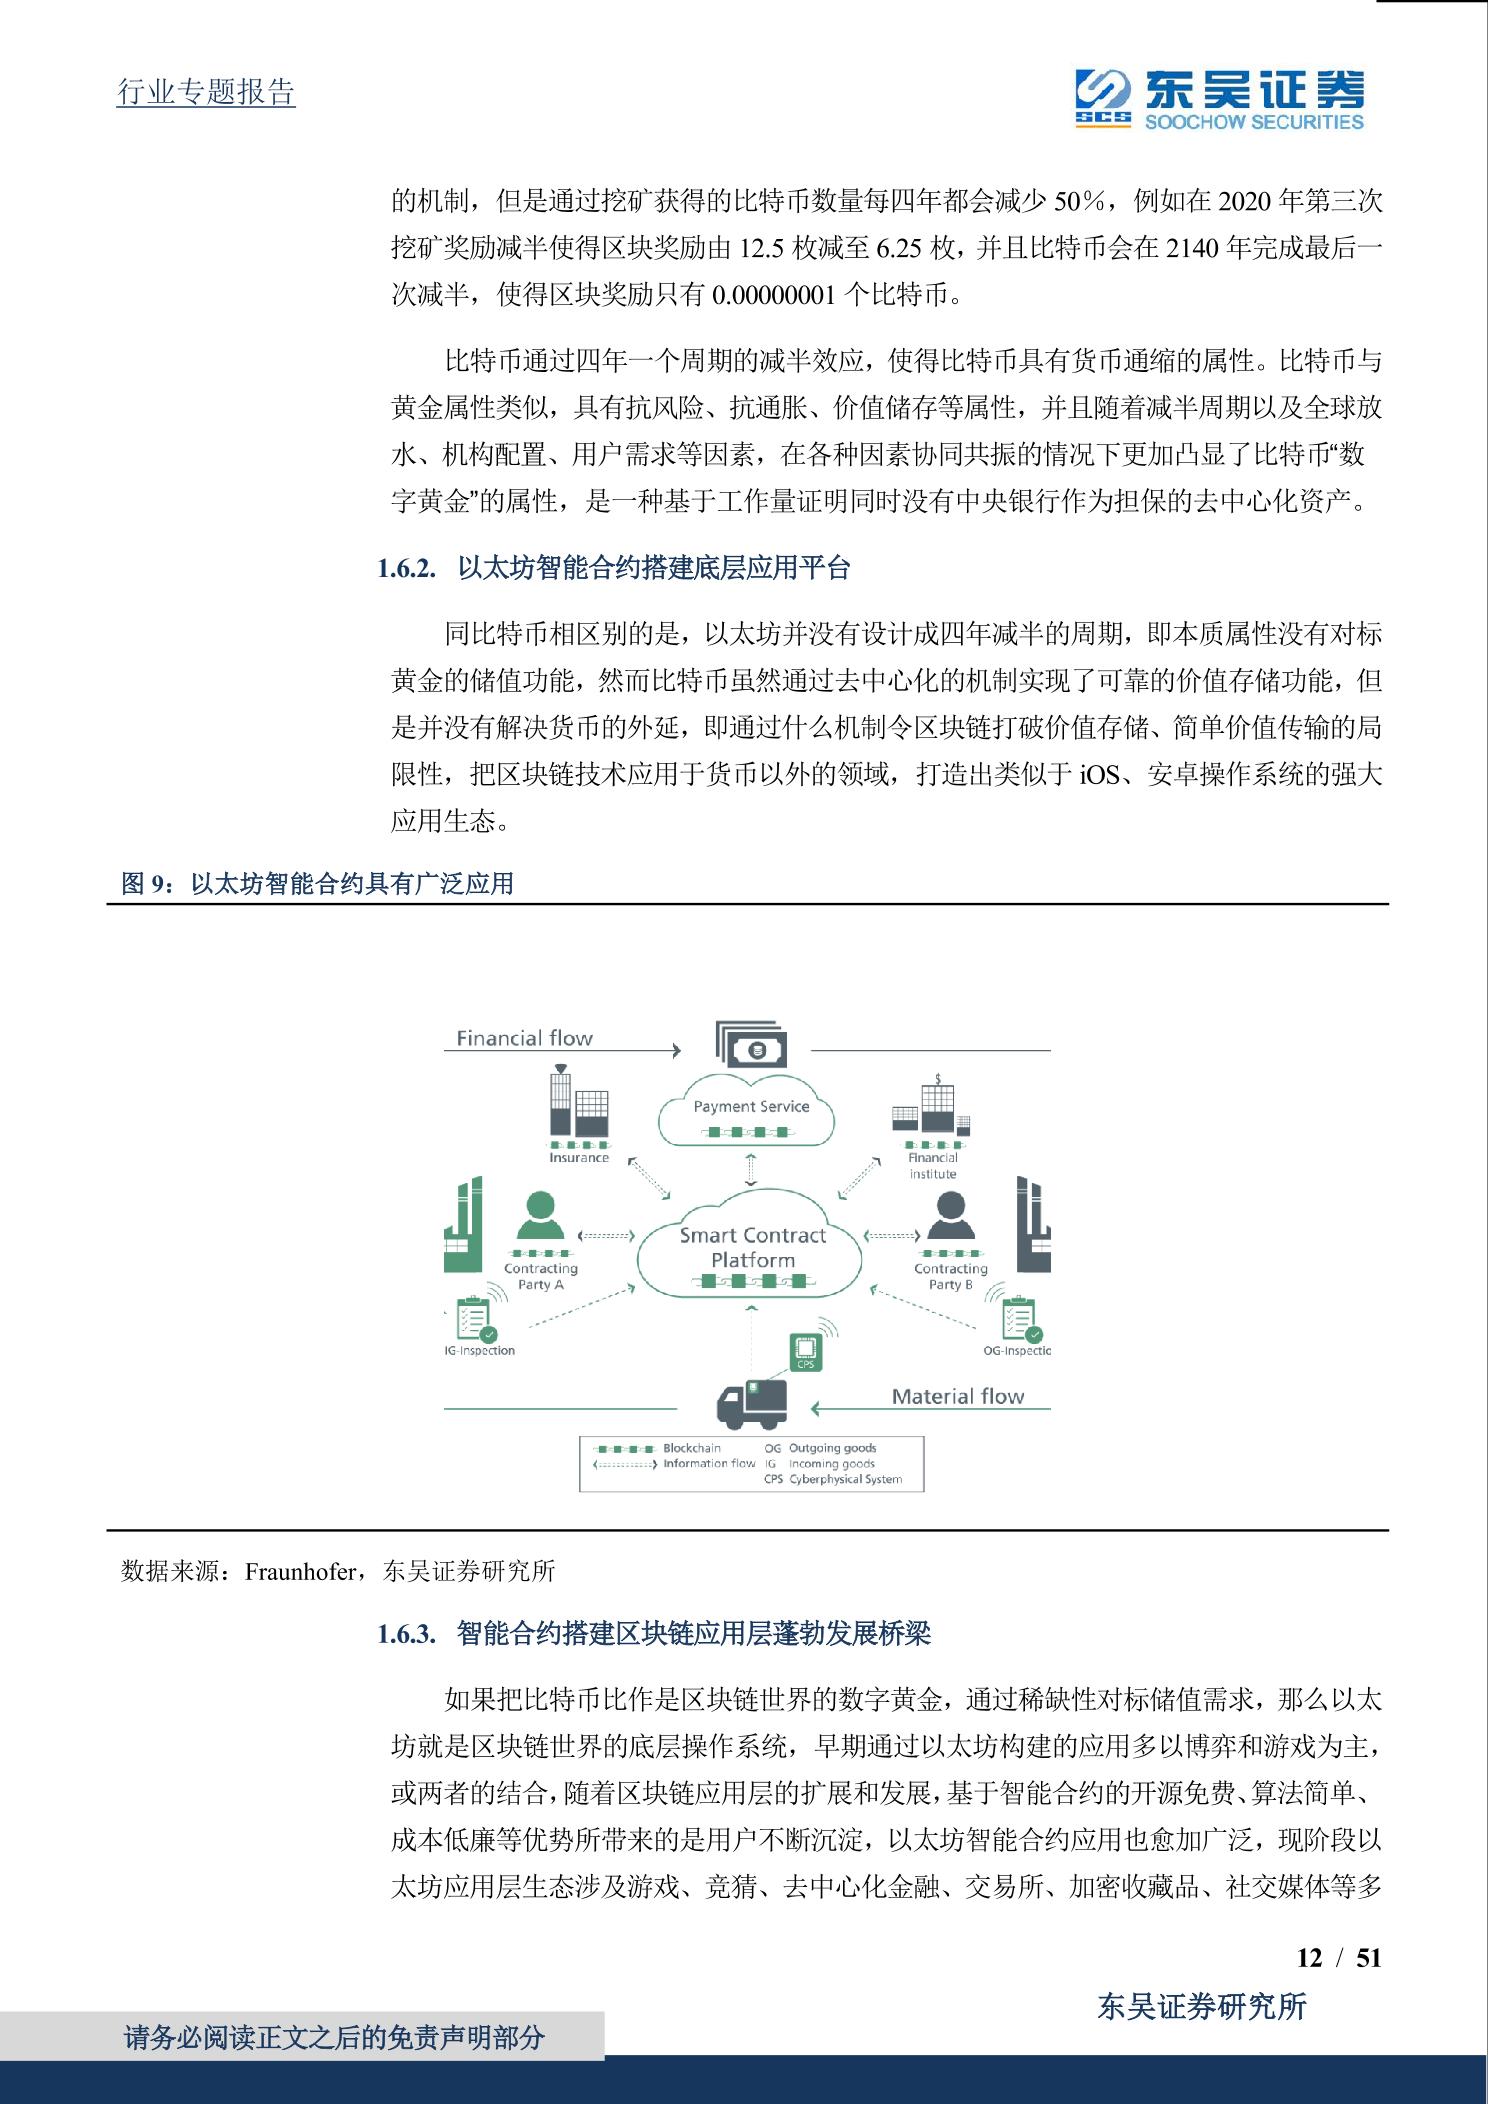 2021年「Eth」以太坊全球最大的可编程分布式超级计算机网络-东吴证券.pdf_1